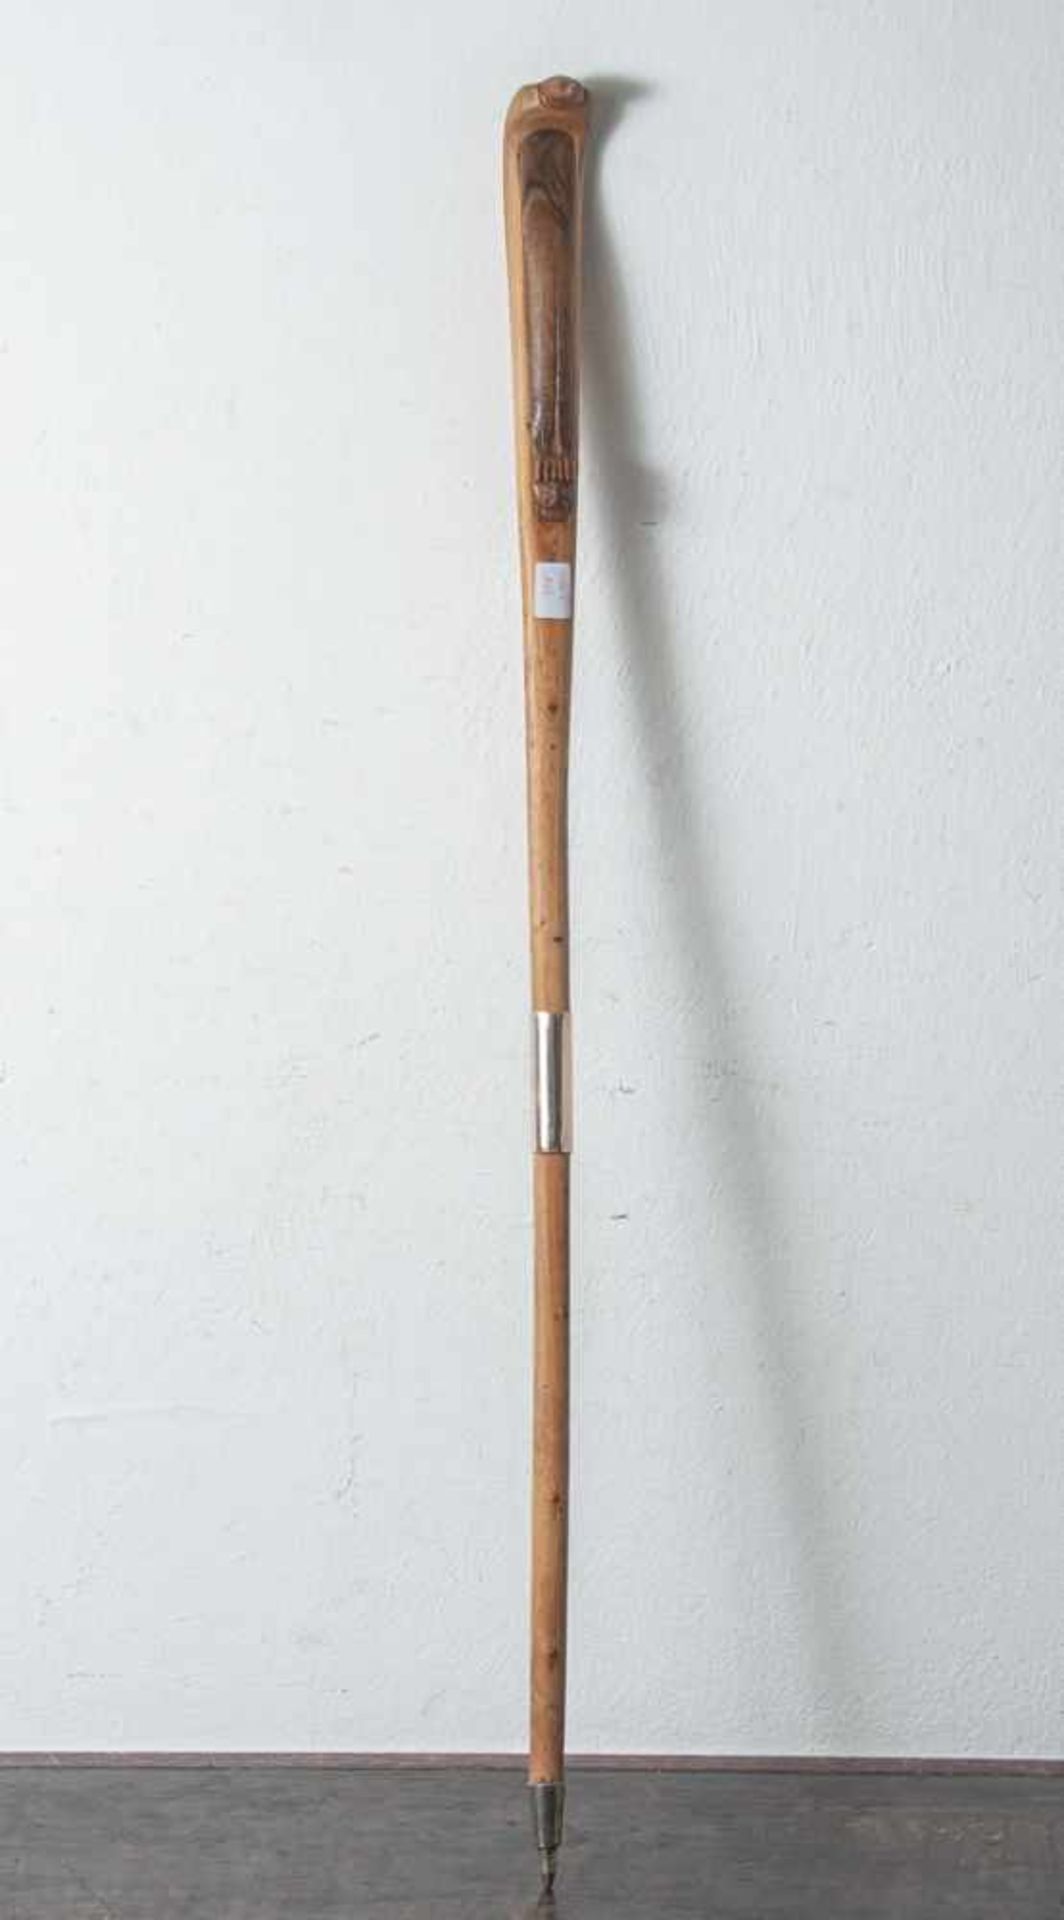 Gehstock aus Holz, Griff in Form einer Kobra, darunter Geheimfach. L. ca. 94 cm.